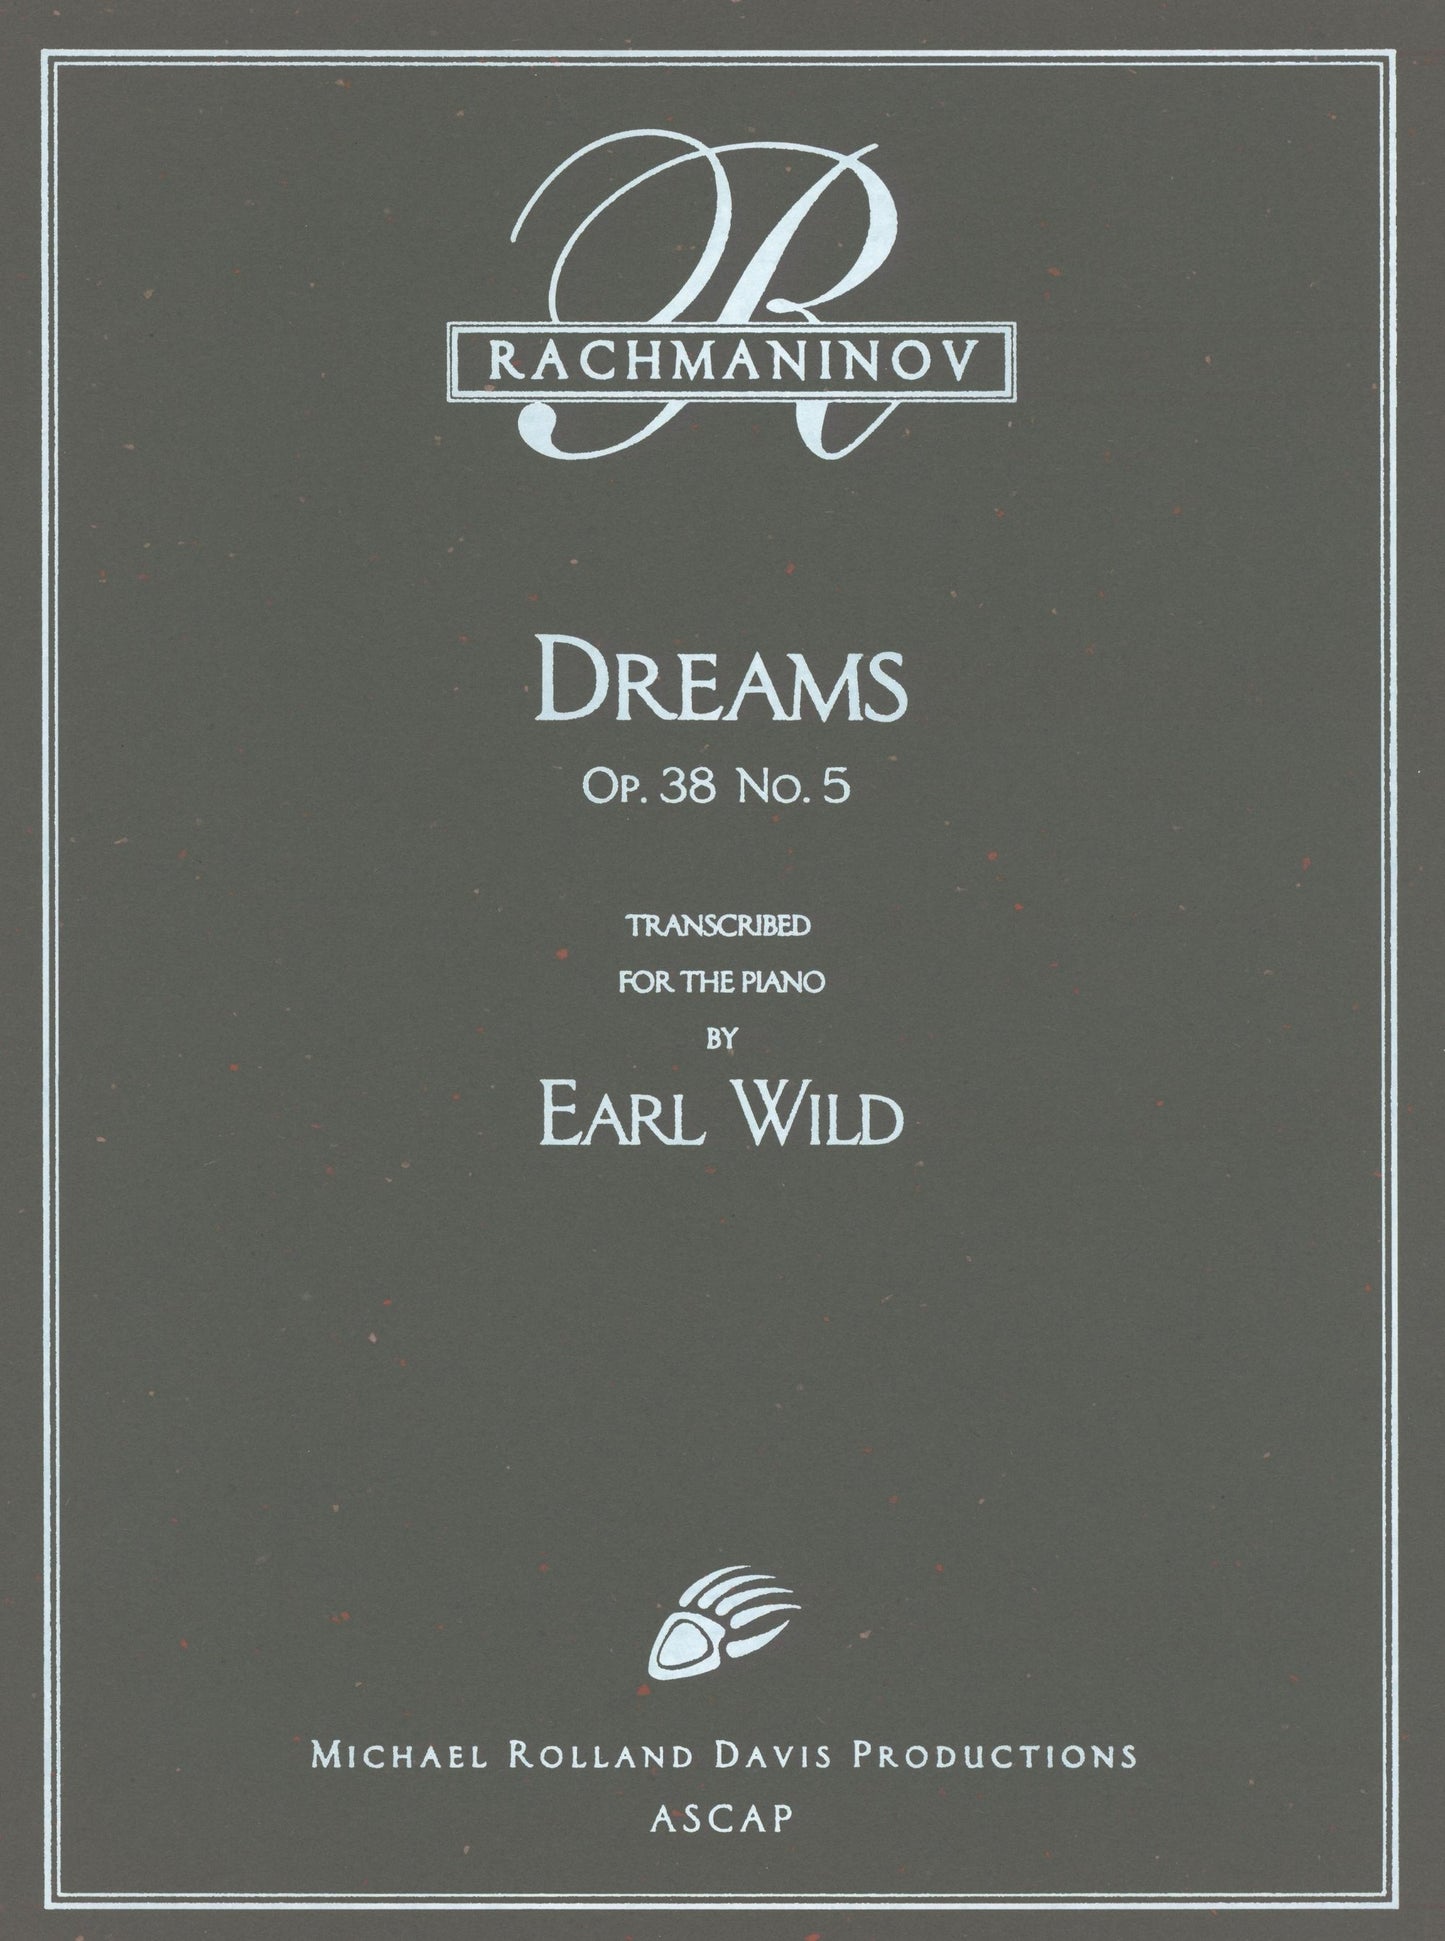 Rachmaninoff-Earl Wild: Dreams, Op. 38, No. 5